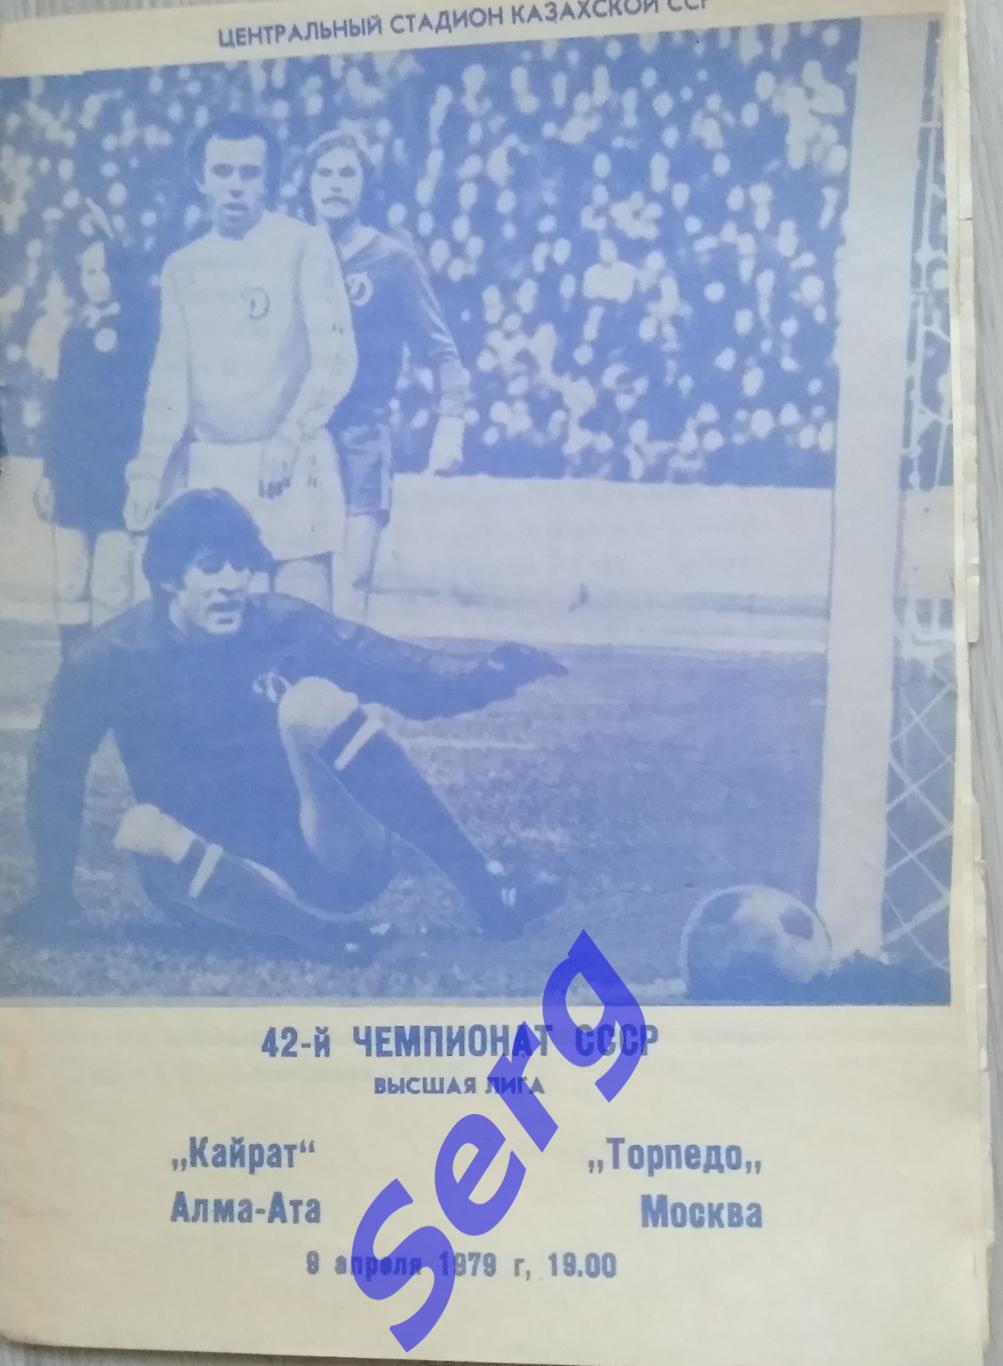 Кайрат Алма-Ата - Торпедо Москва - 09 апреля 1979 год